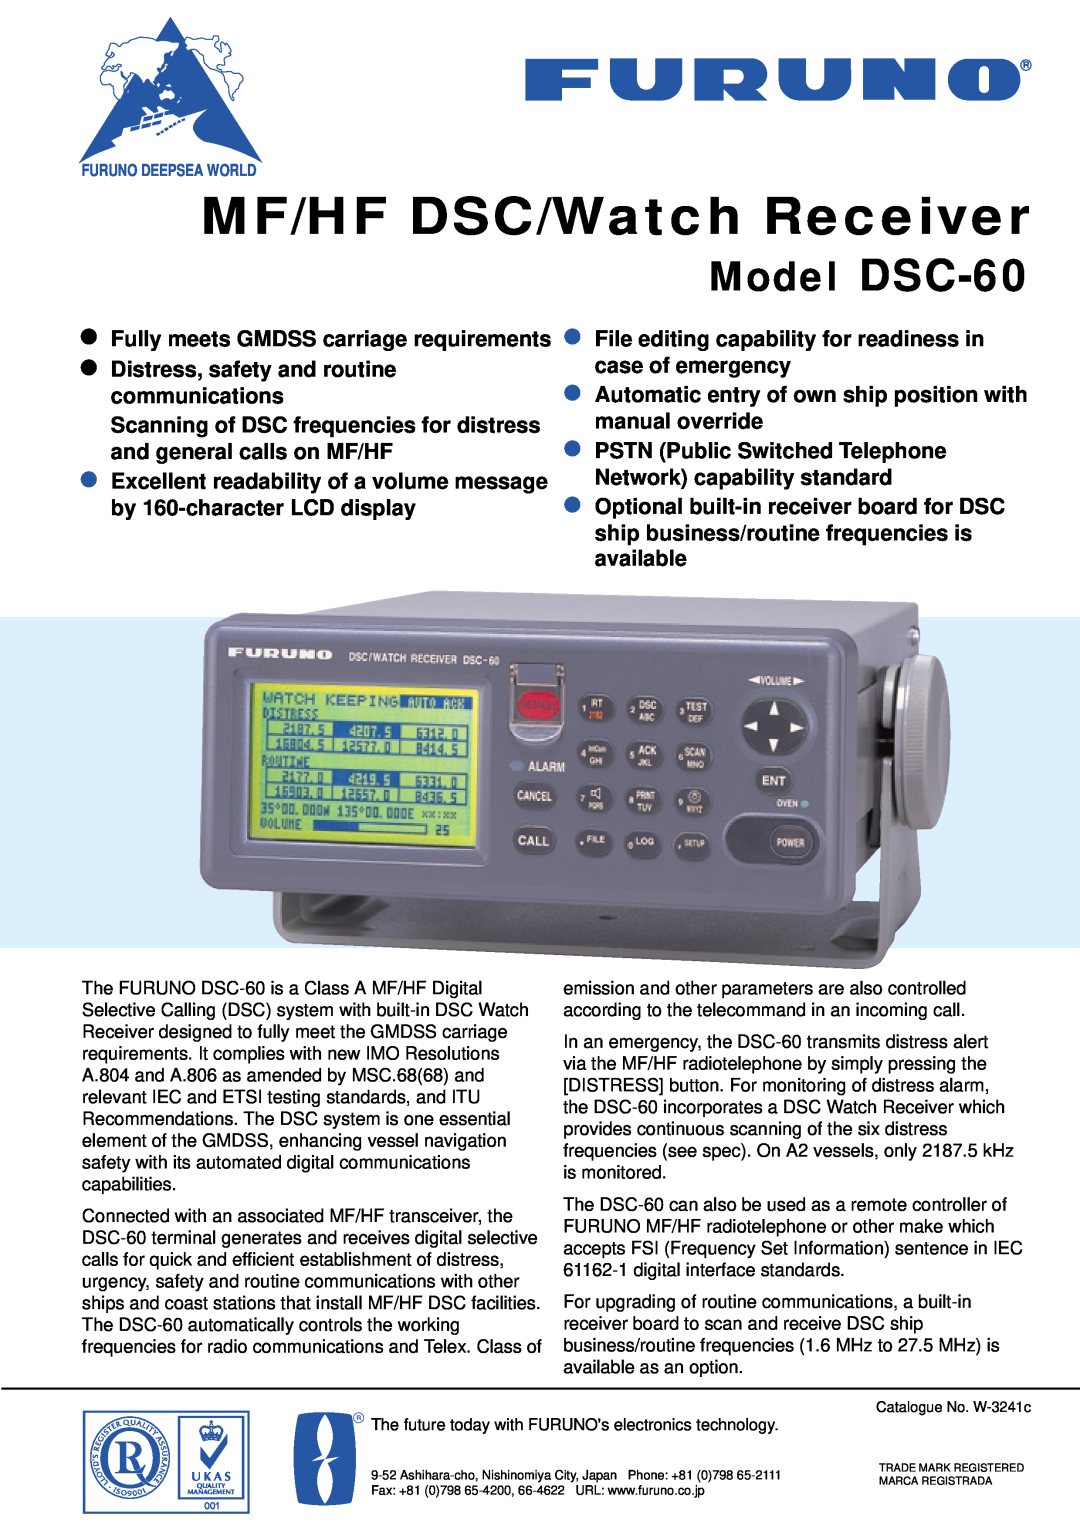 Furuno manual MF/HF DSC/Watch Receiver, Model DSC-60 